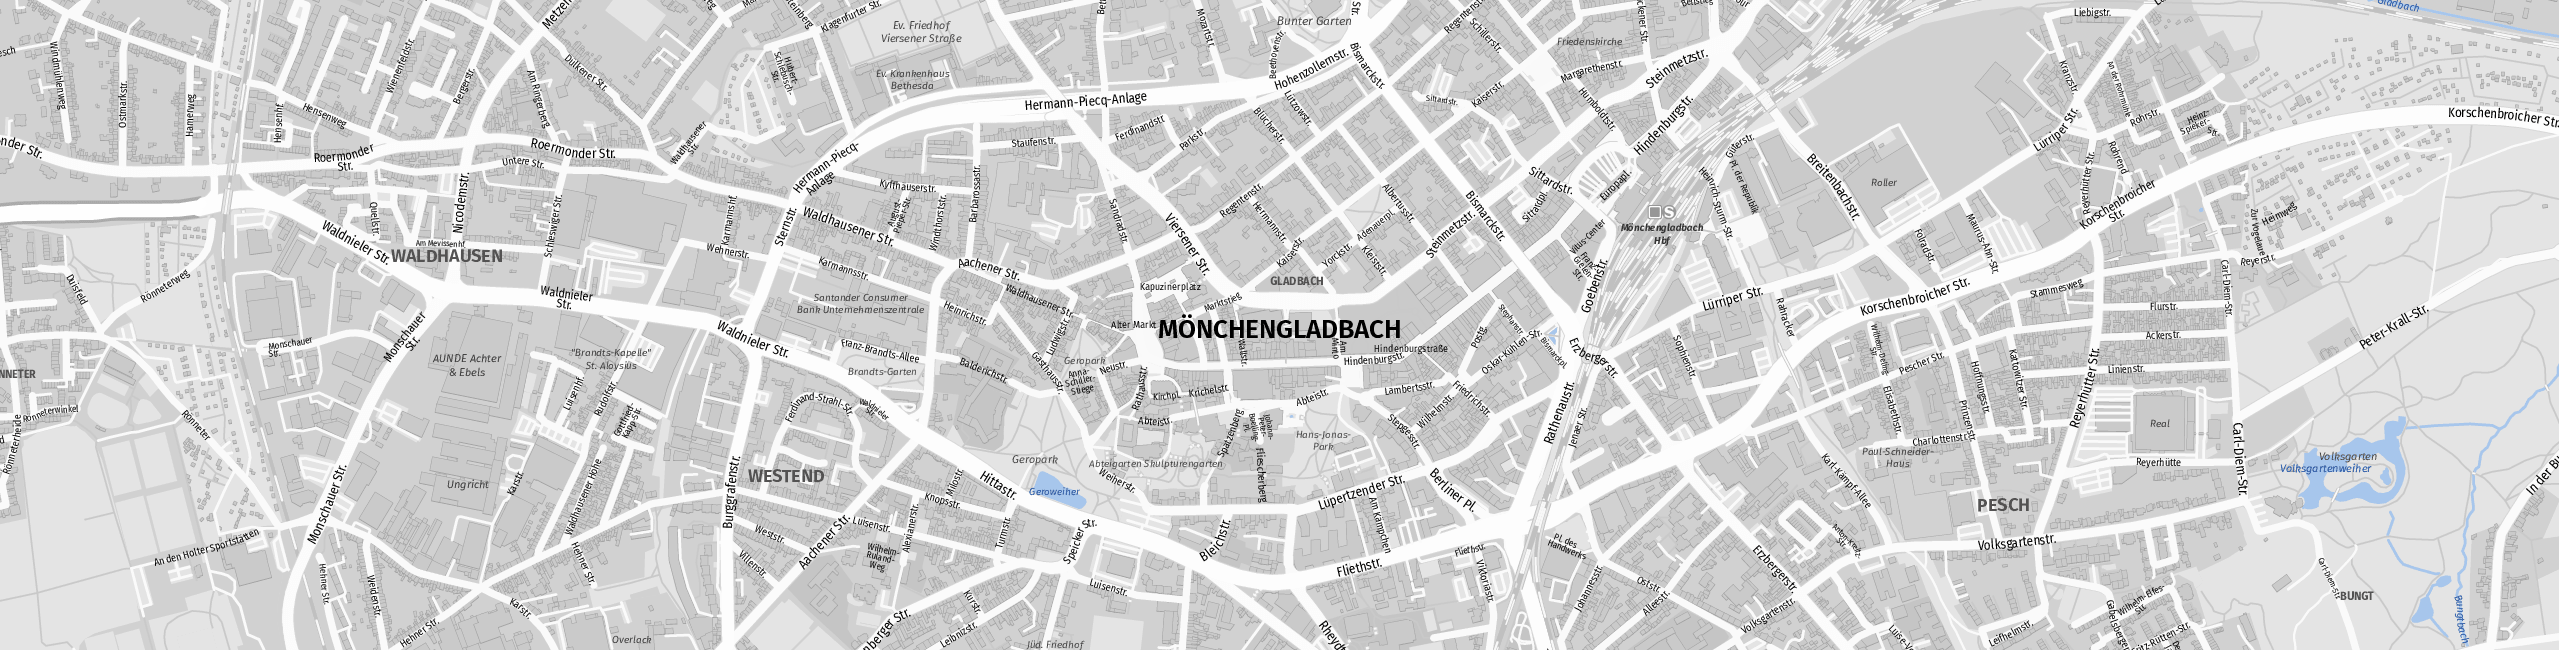 Stadtplan Mönchengladbach zum Downloaden.